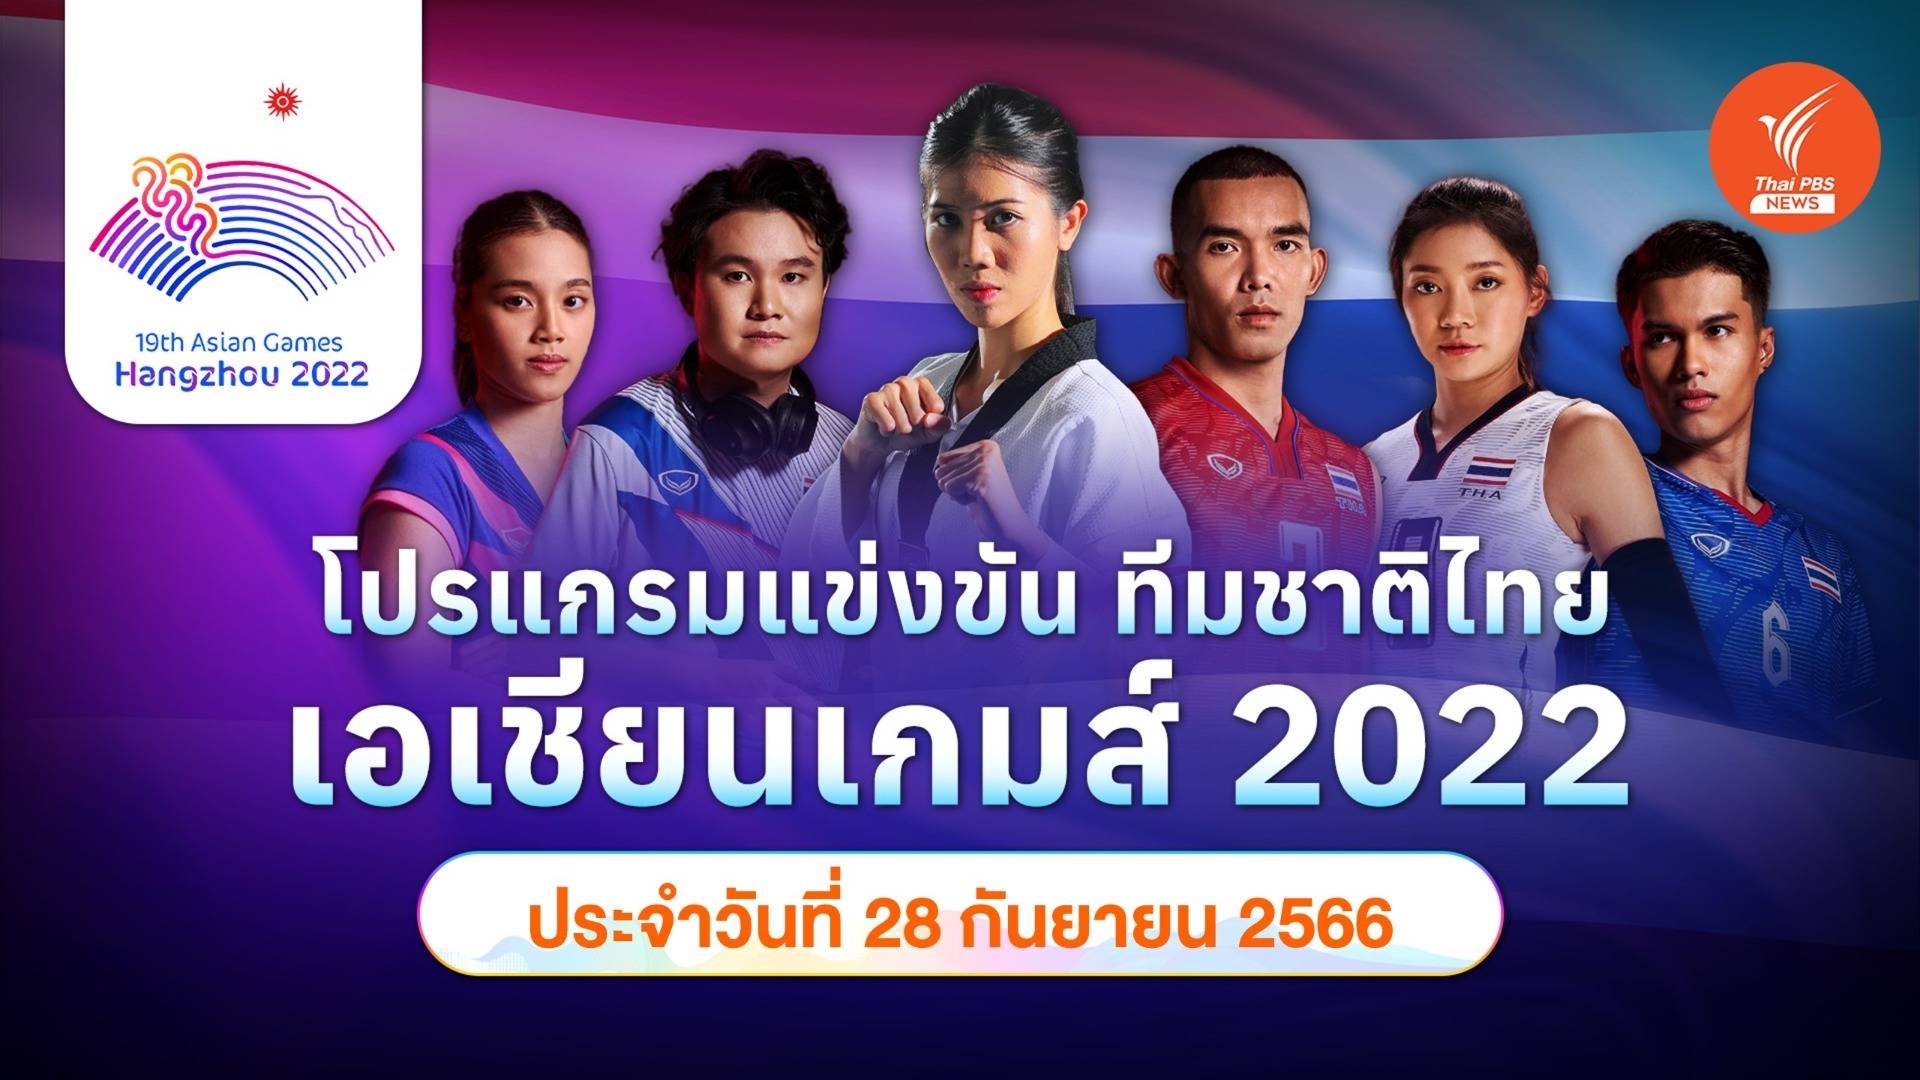 โปรแกรมการแข่งขัน เอเชียนเกมส์ 2022 ทัพนักกีฬาไทย วันที่ 28 ก.ย.66